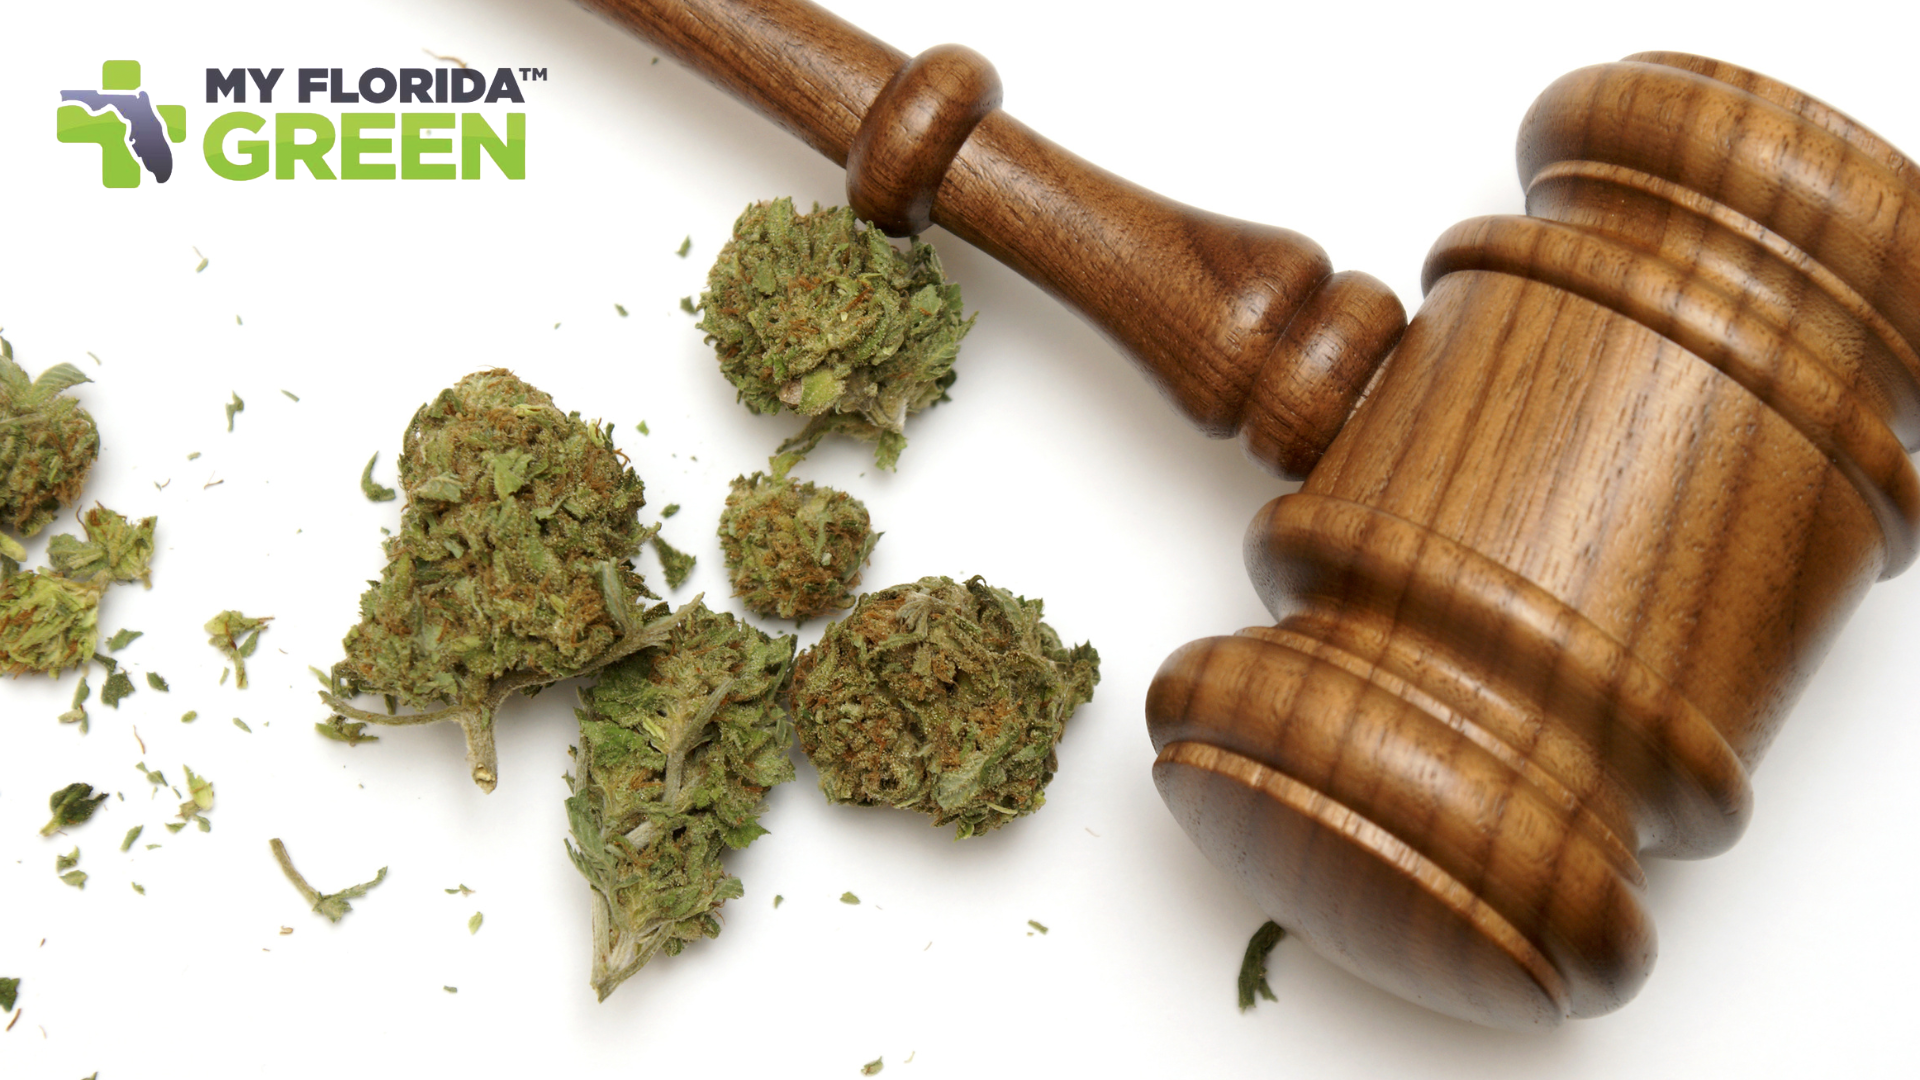 Current Landscape of Medical Marijuana Laws